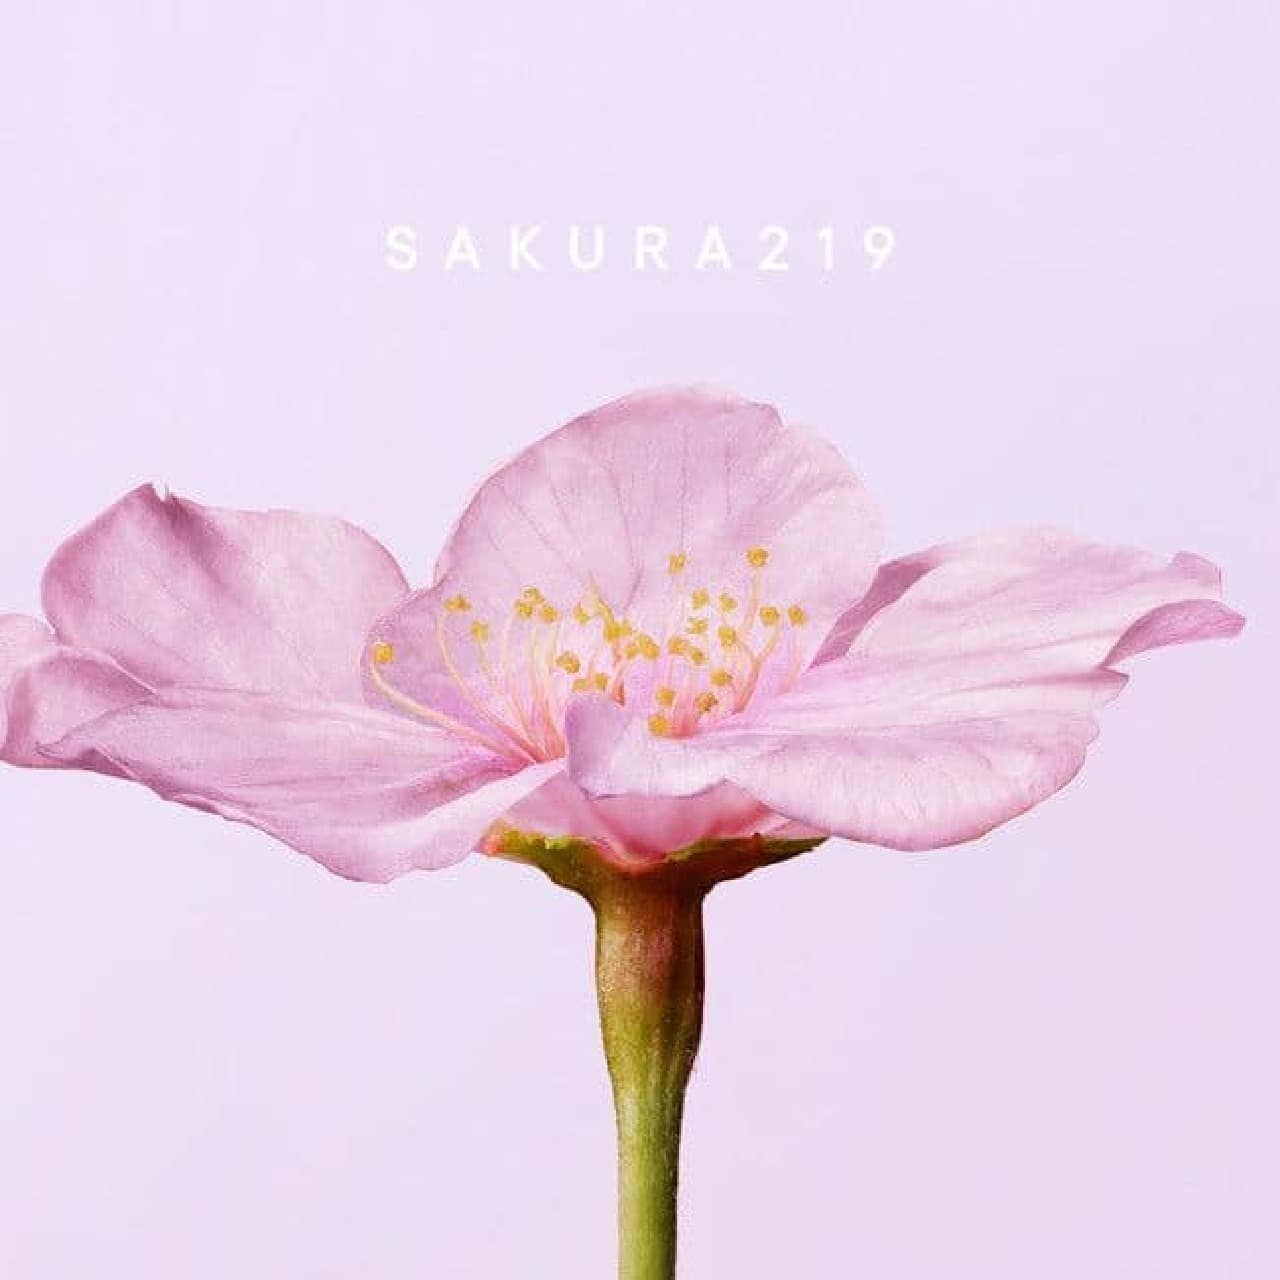 SHIRO "Sakura 219"